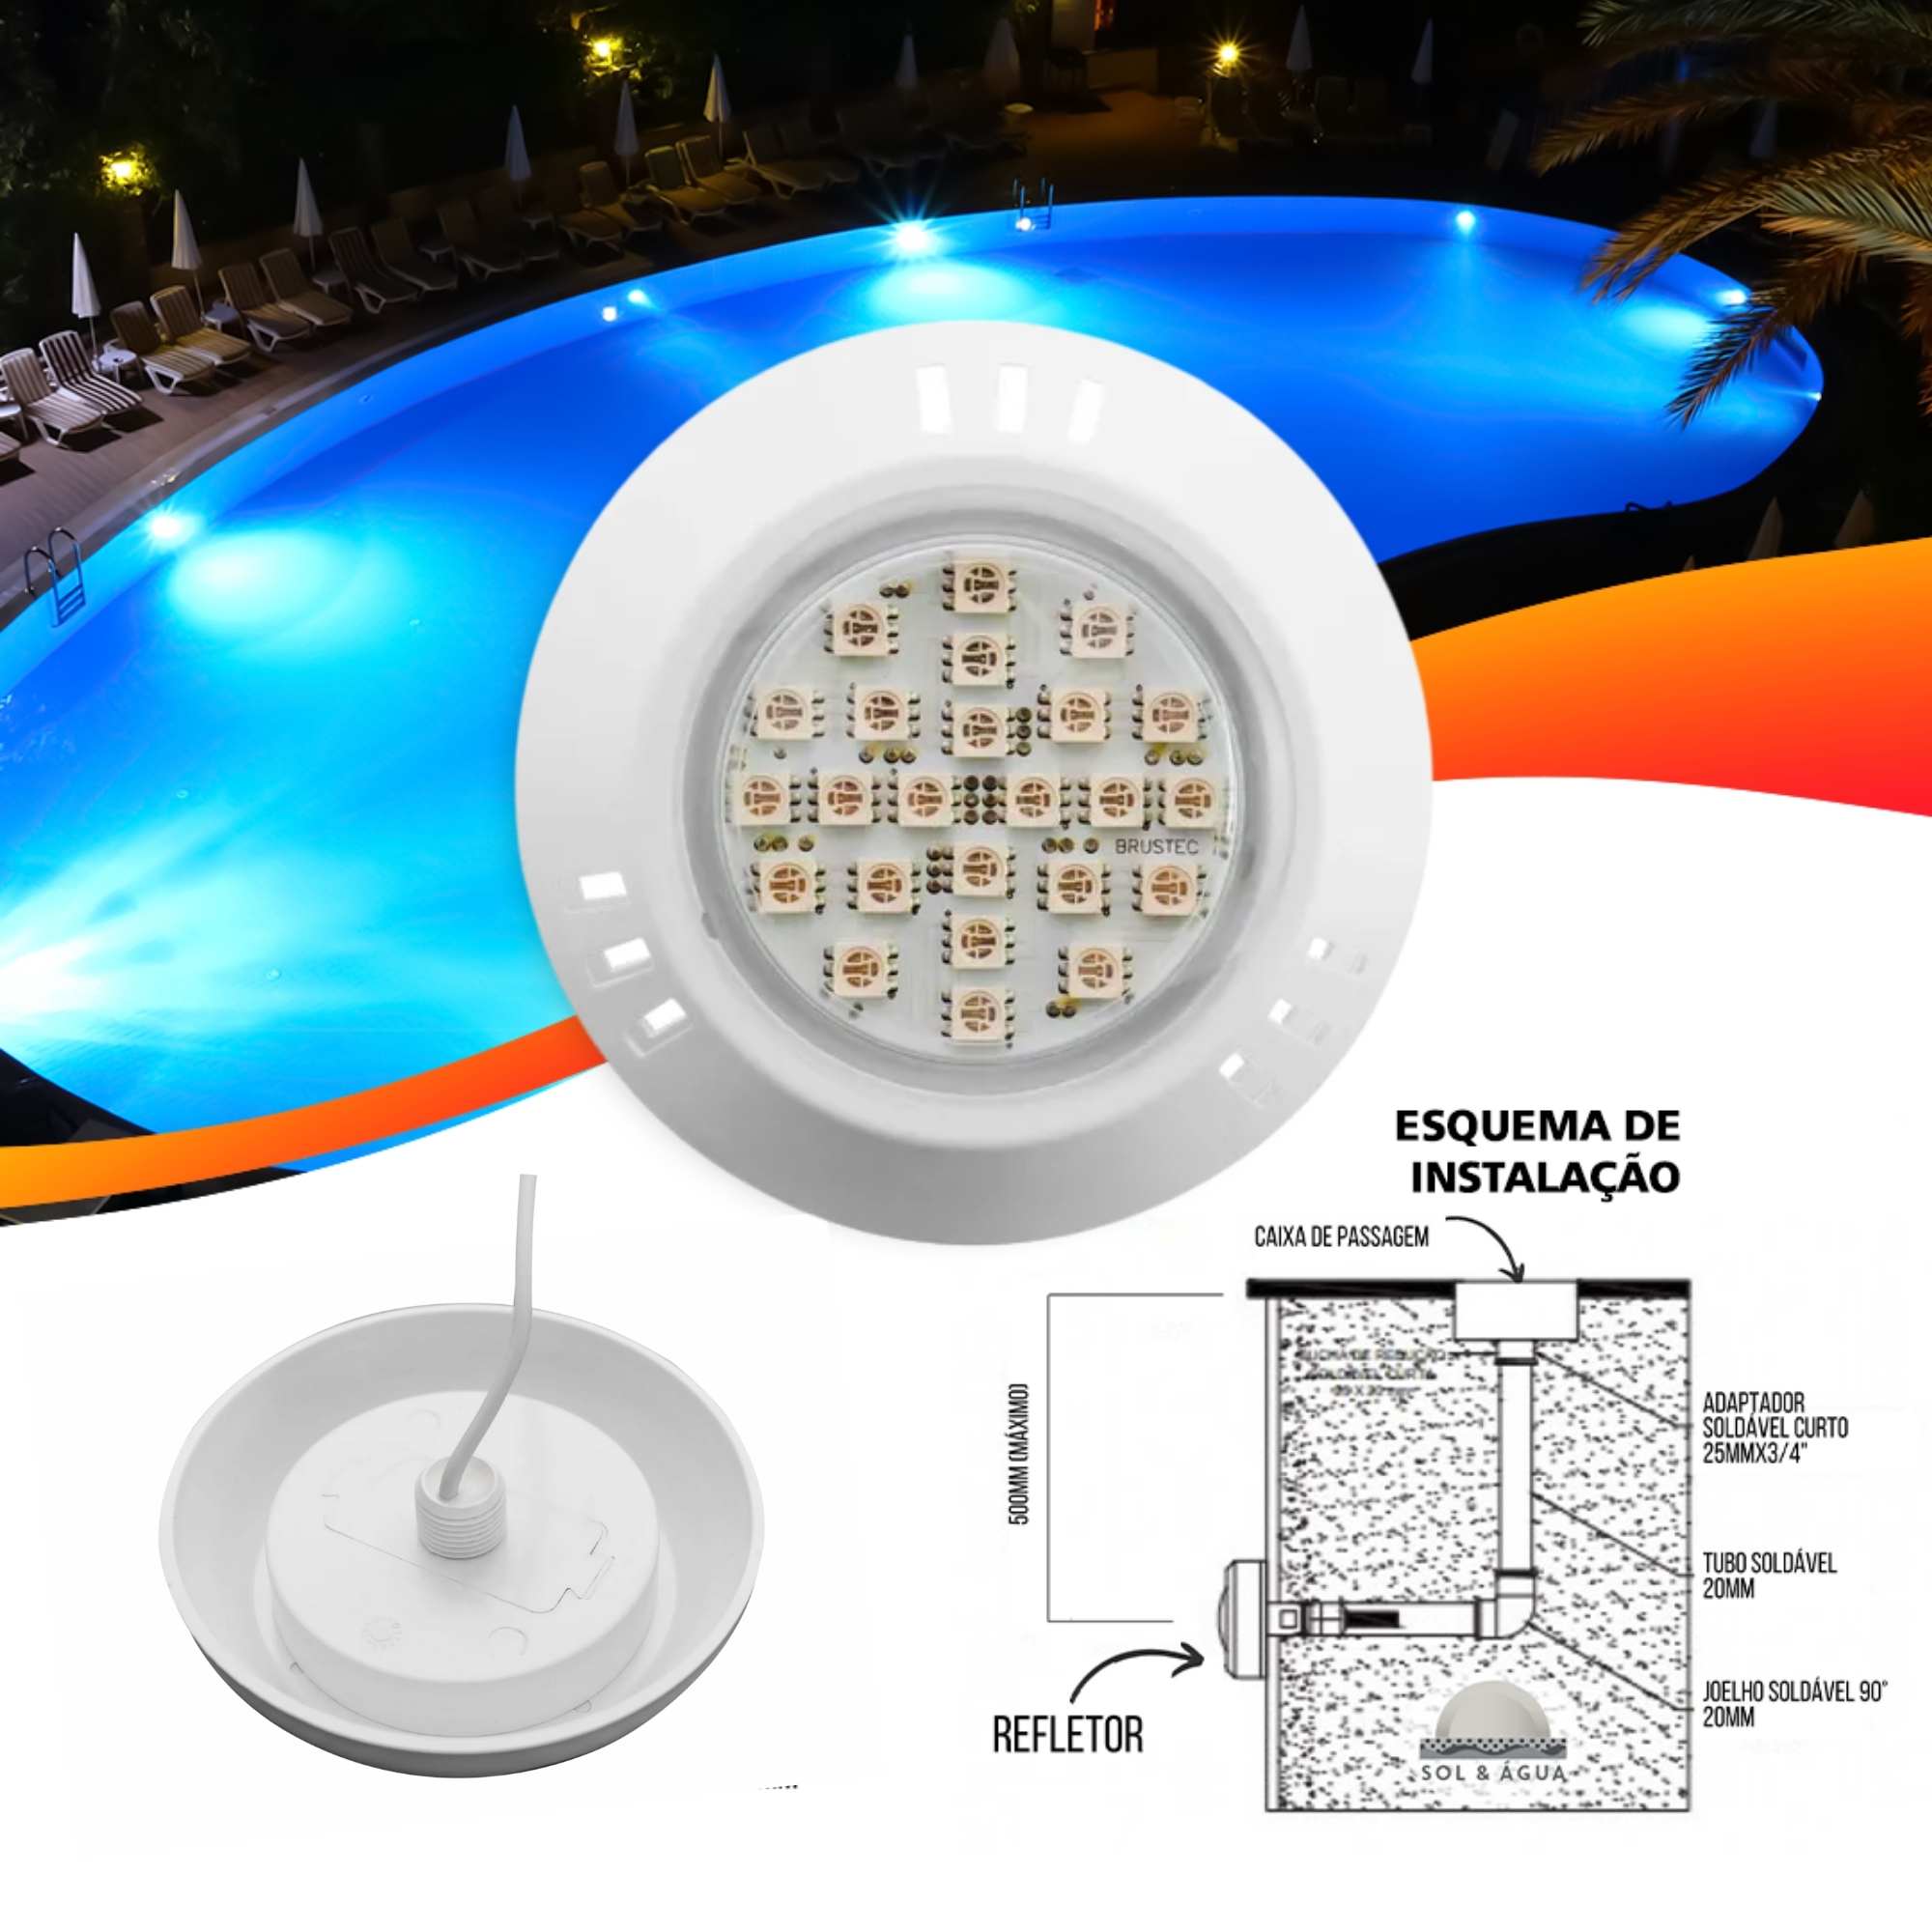 Refletor Power LED 5W ABS Cor da Luz Branca Luminária para Piscina  - Brustec  - Sol e Água Piscinas e Acessórios